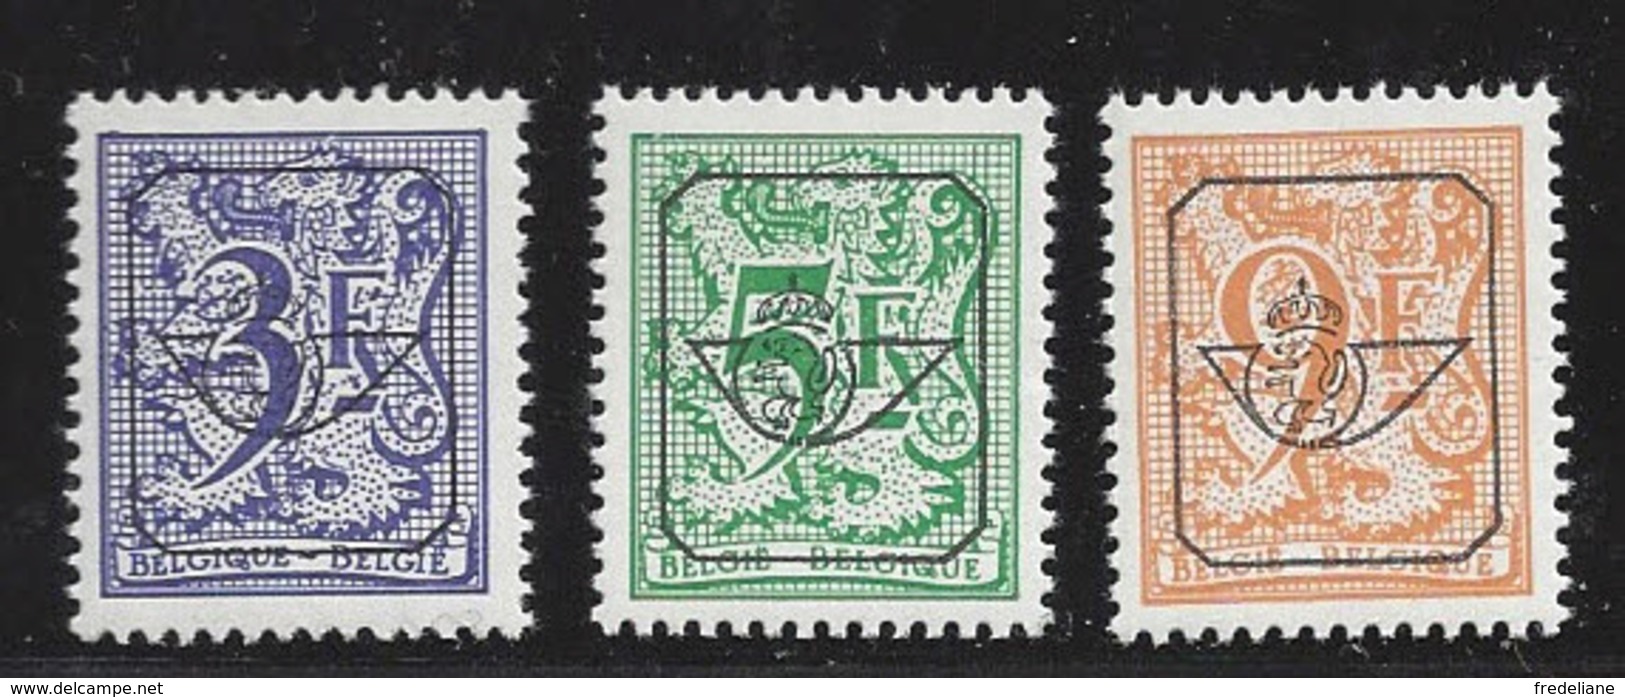 HERALDISCHE LEEUW EPACAR - Typos 1967-85 (Löwe Und Banderole)